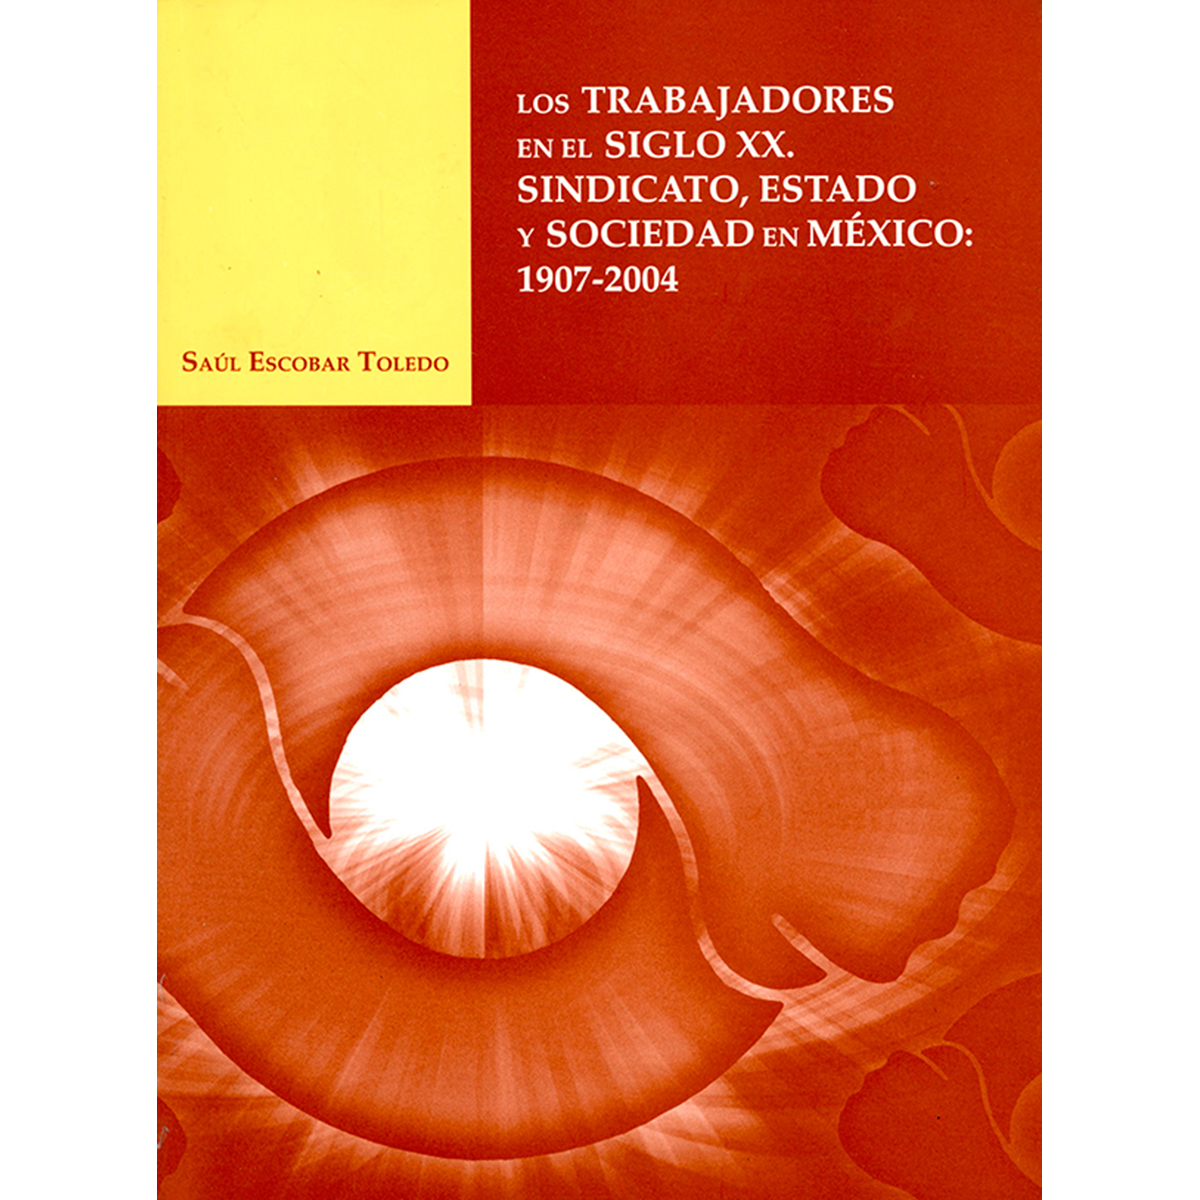 LOS TRABAJADORES EN EL SIGLO XX. SINDICATO, ESTADO Y SOCIEDAD EN MÉXICO 1907-2004